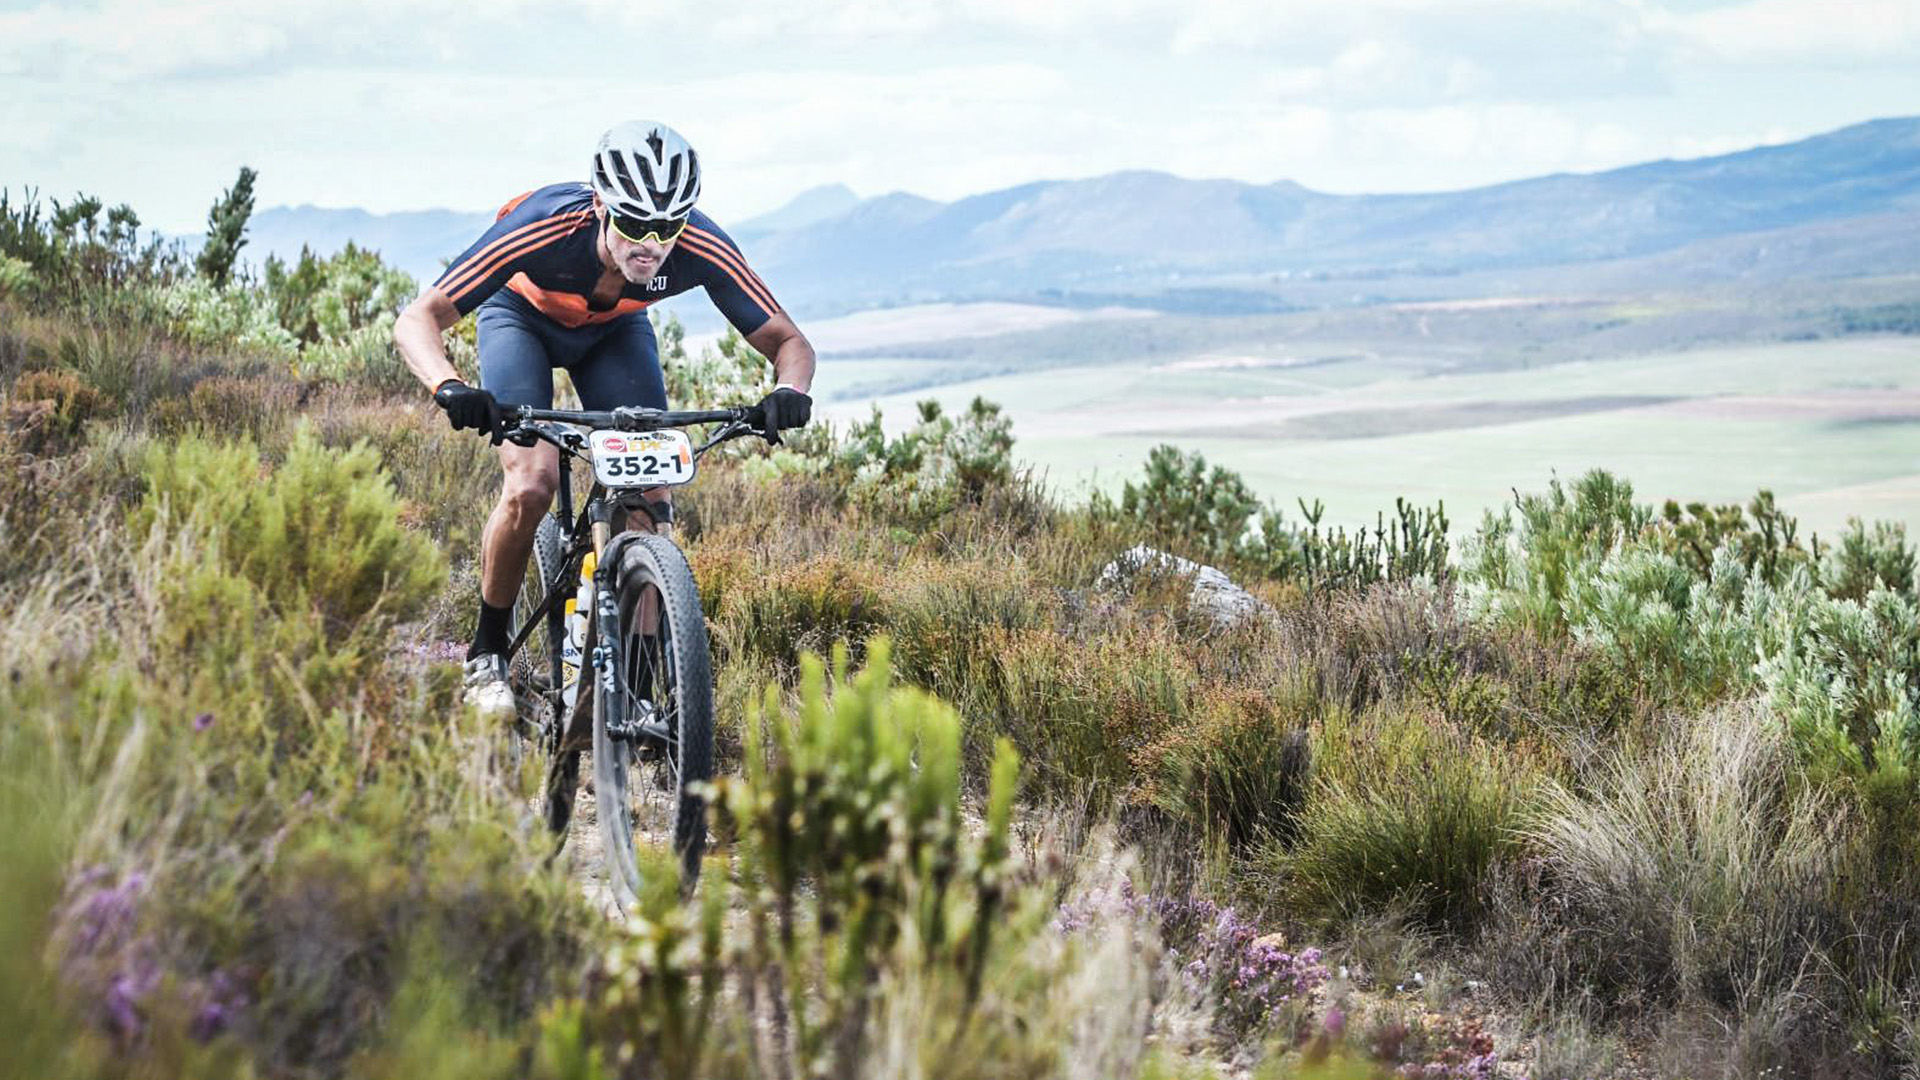 El desafío extremo de Luis Enrique en una de las carreras de Mountain Bike más exigentes del mundo: “Es sufrir y sufrir”